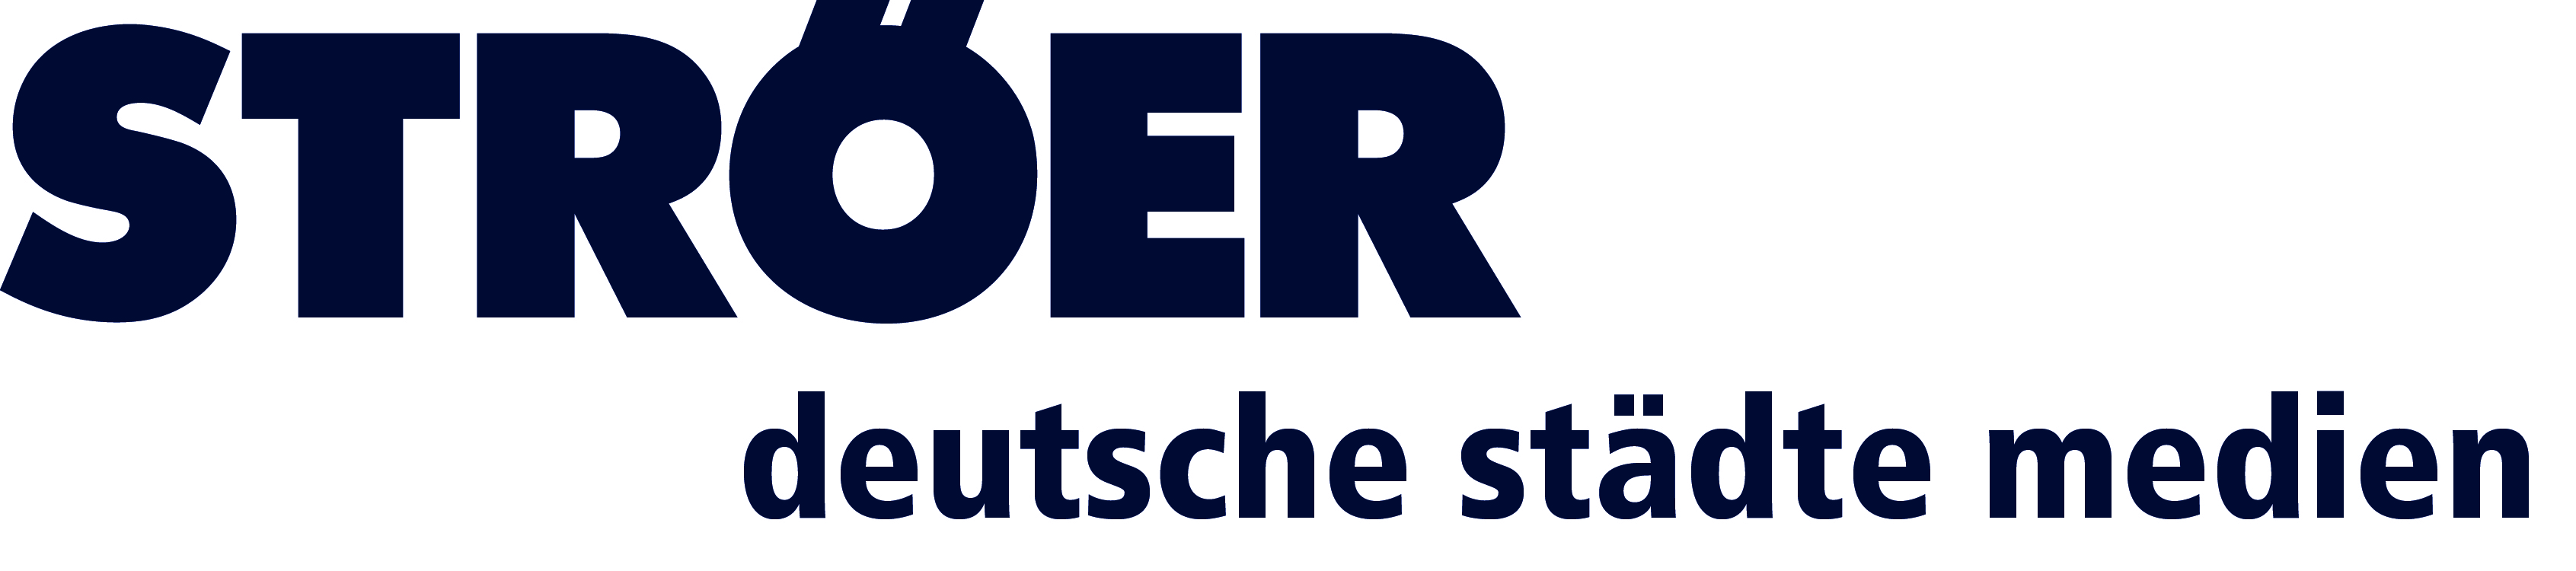 Logo - Ströer Deutsche Städte Medien GmbH